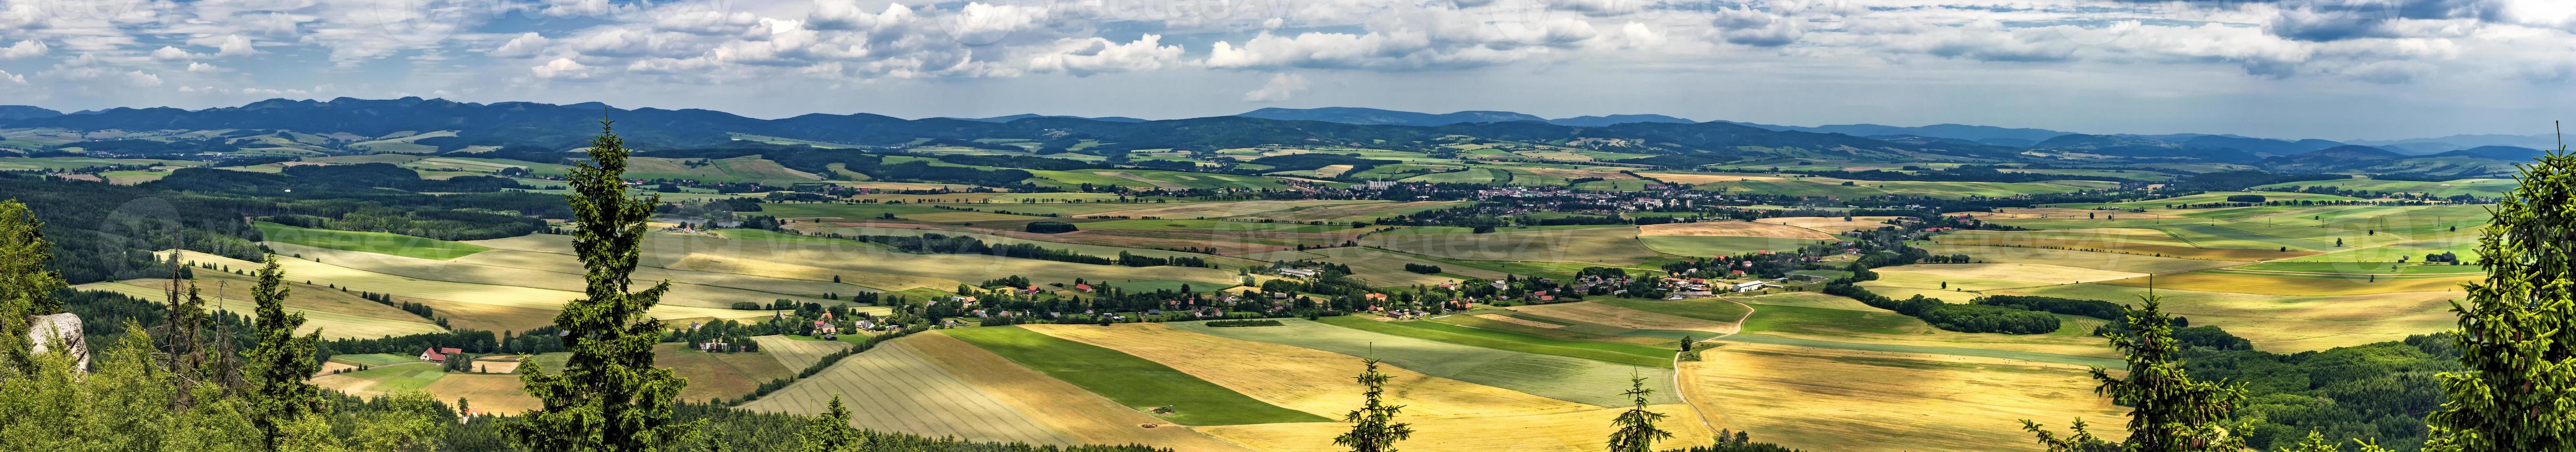 Panoramablick auf die Adrspach-Teplice-Felsen foto